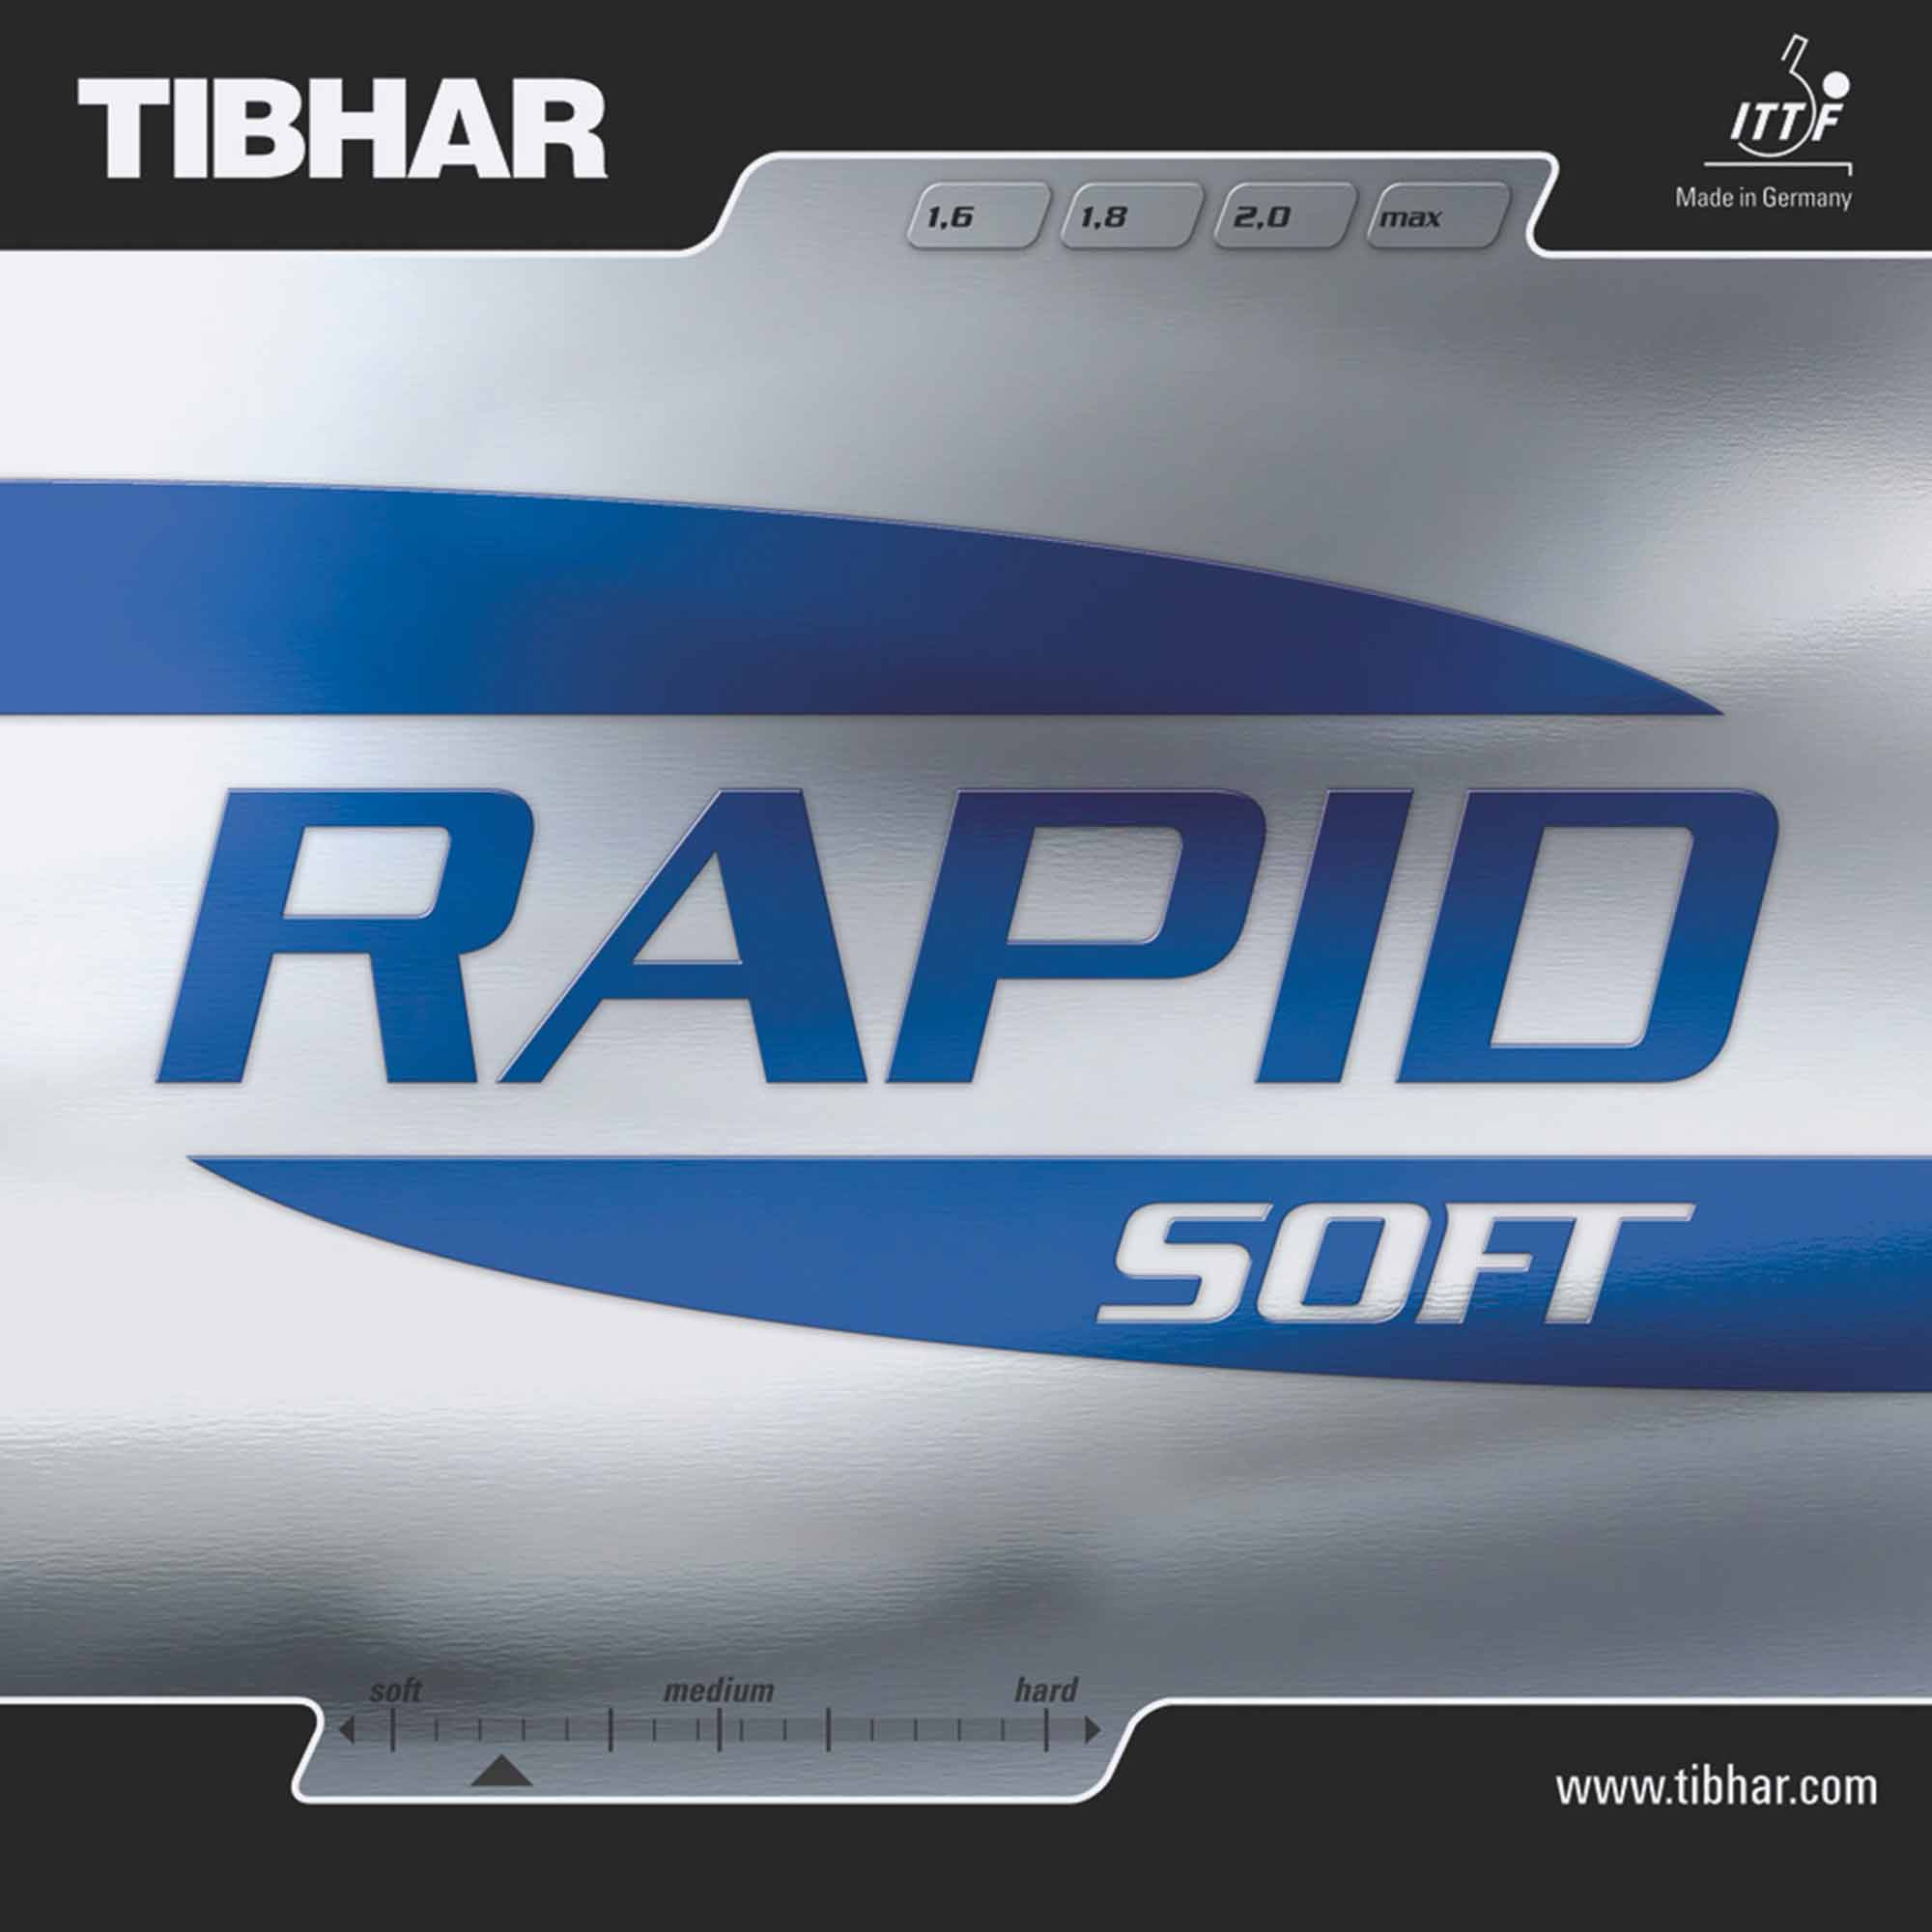 Tibhar Belag Rapid Soft rot 1,6 mm